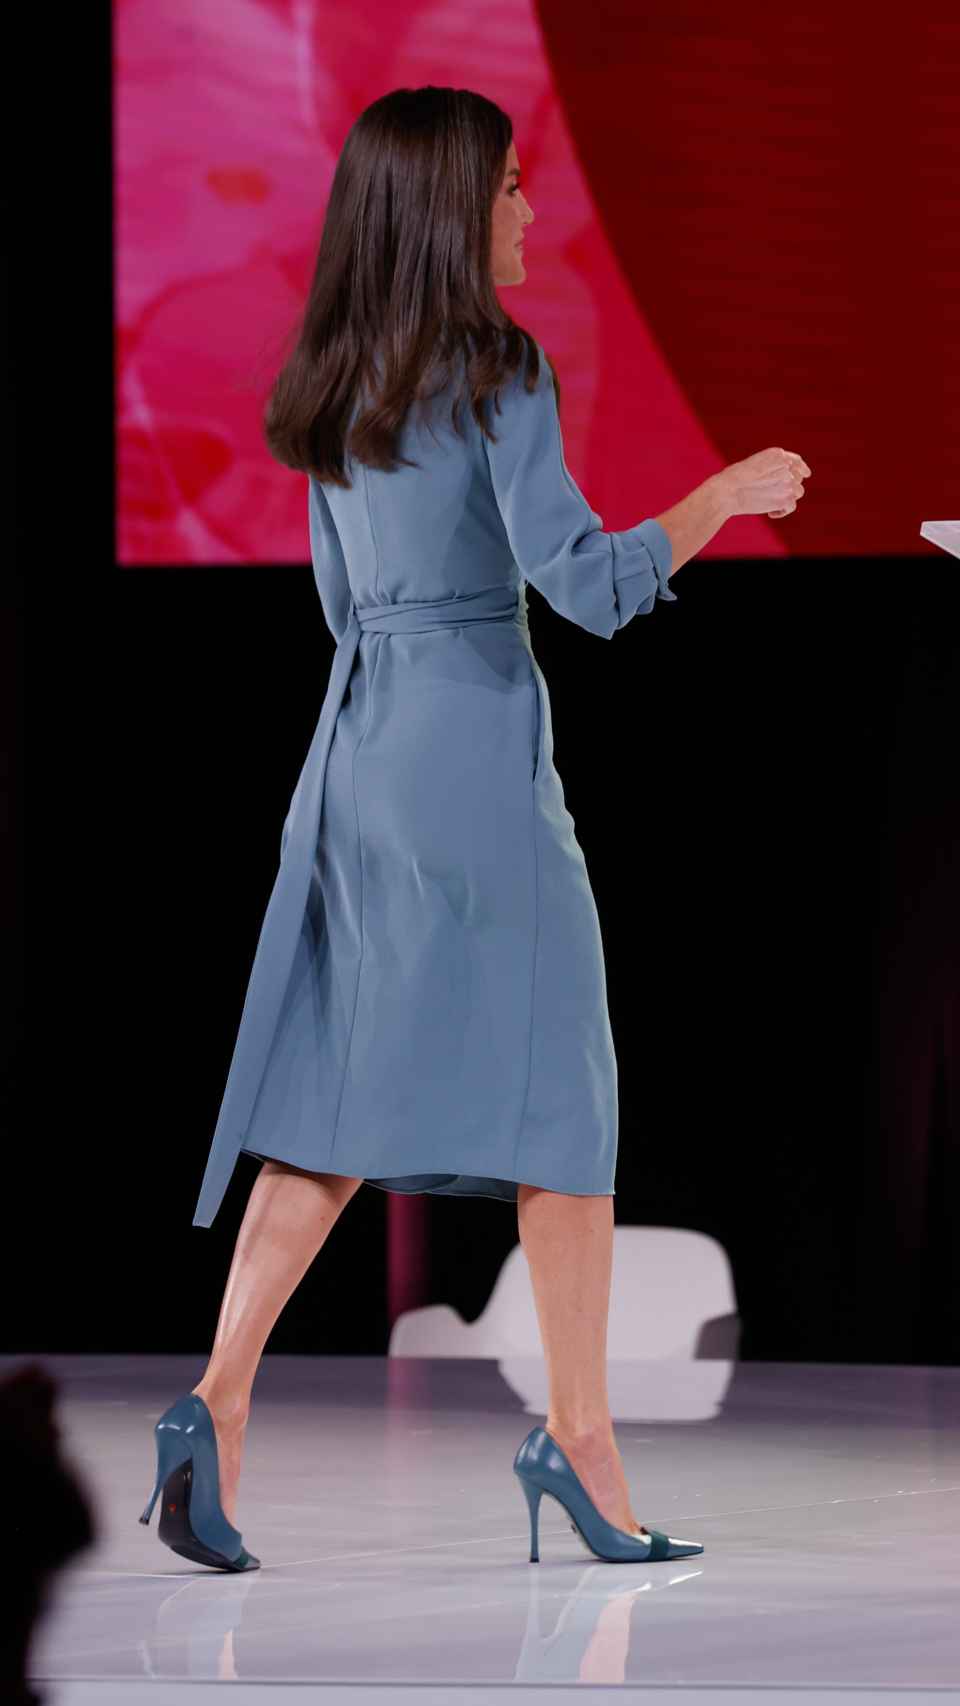 La reina Letizia ha recuperado un vestido atemporal de Adolfo Domínguez.